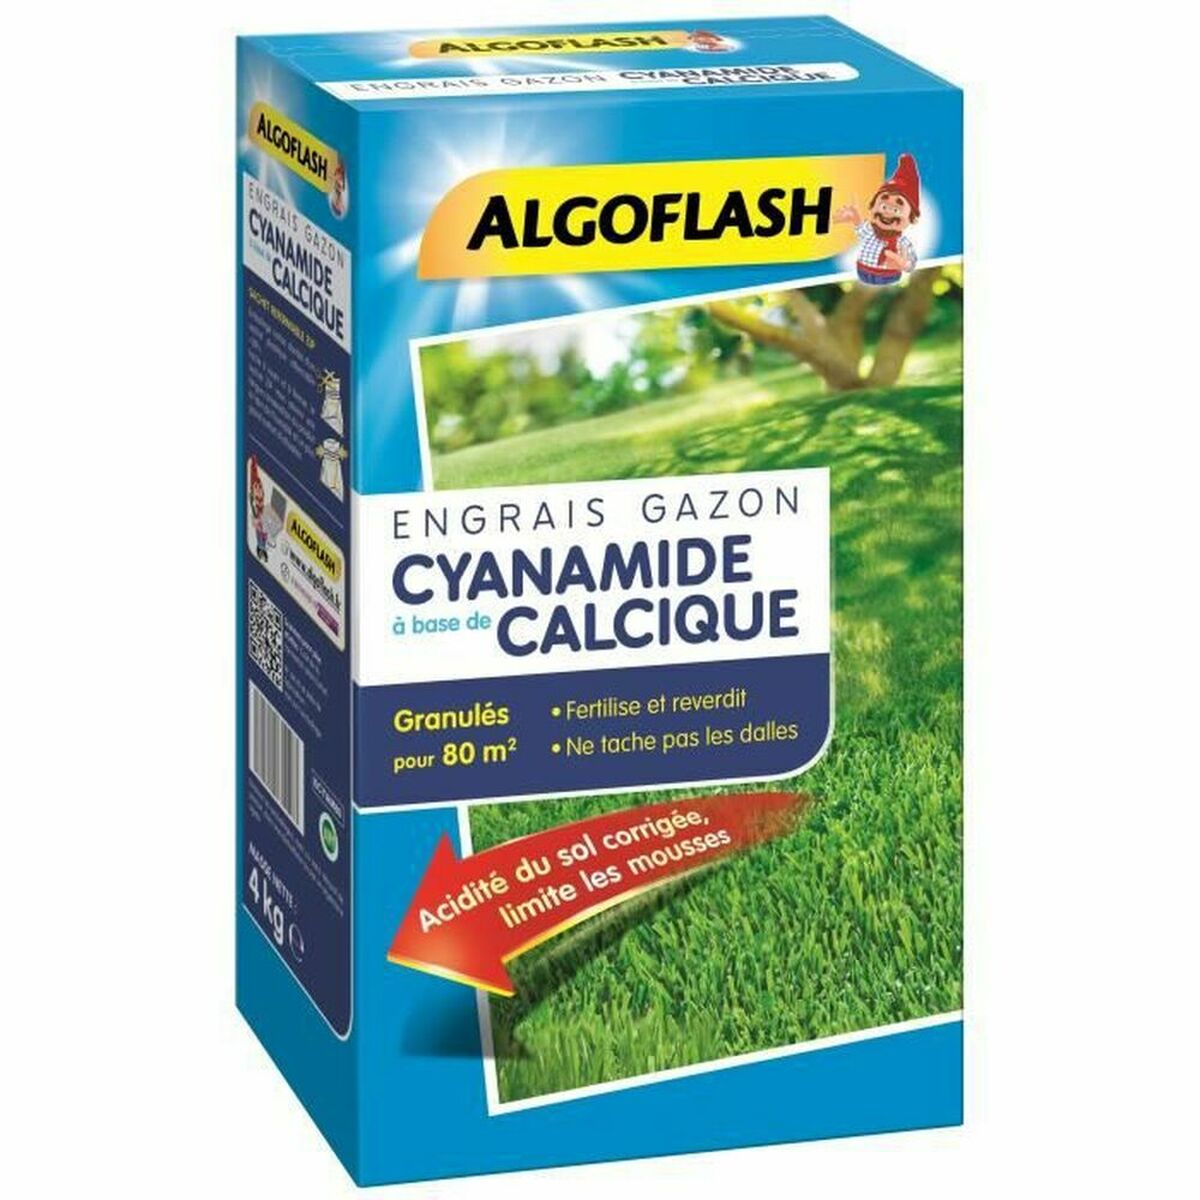 Plant fertilizer Algoflash (4 Kg)